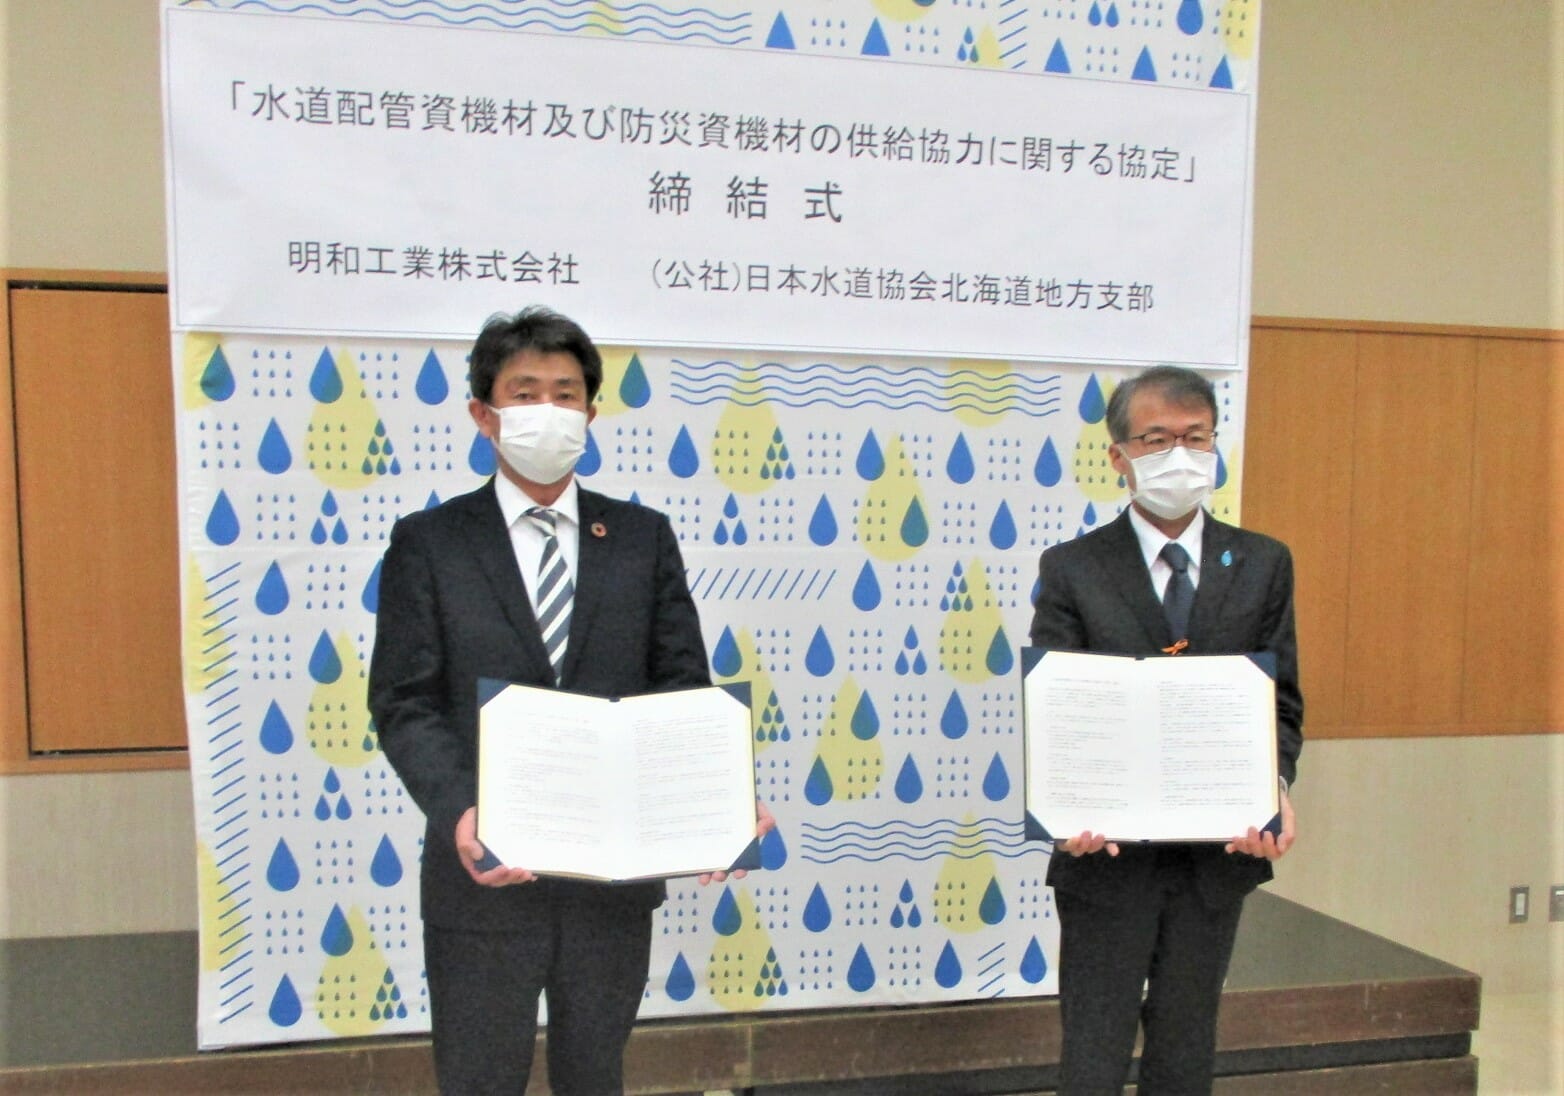 公益社団法人日本水道協会北海道地方支部と「水道配管資機材及び防災資機材の供給協力に関する協定」を締結しました